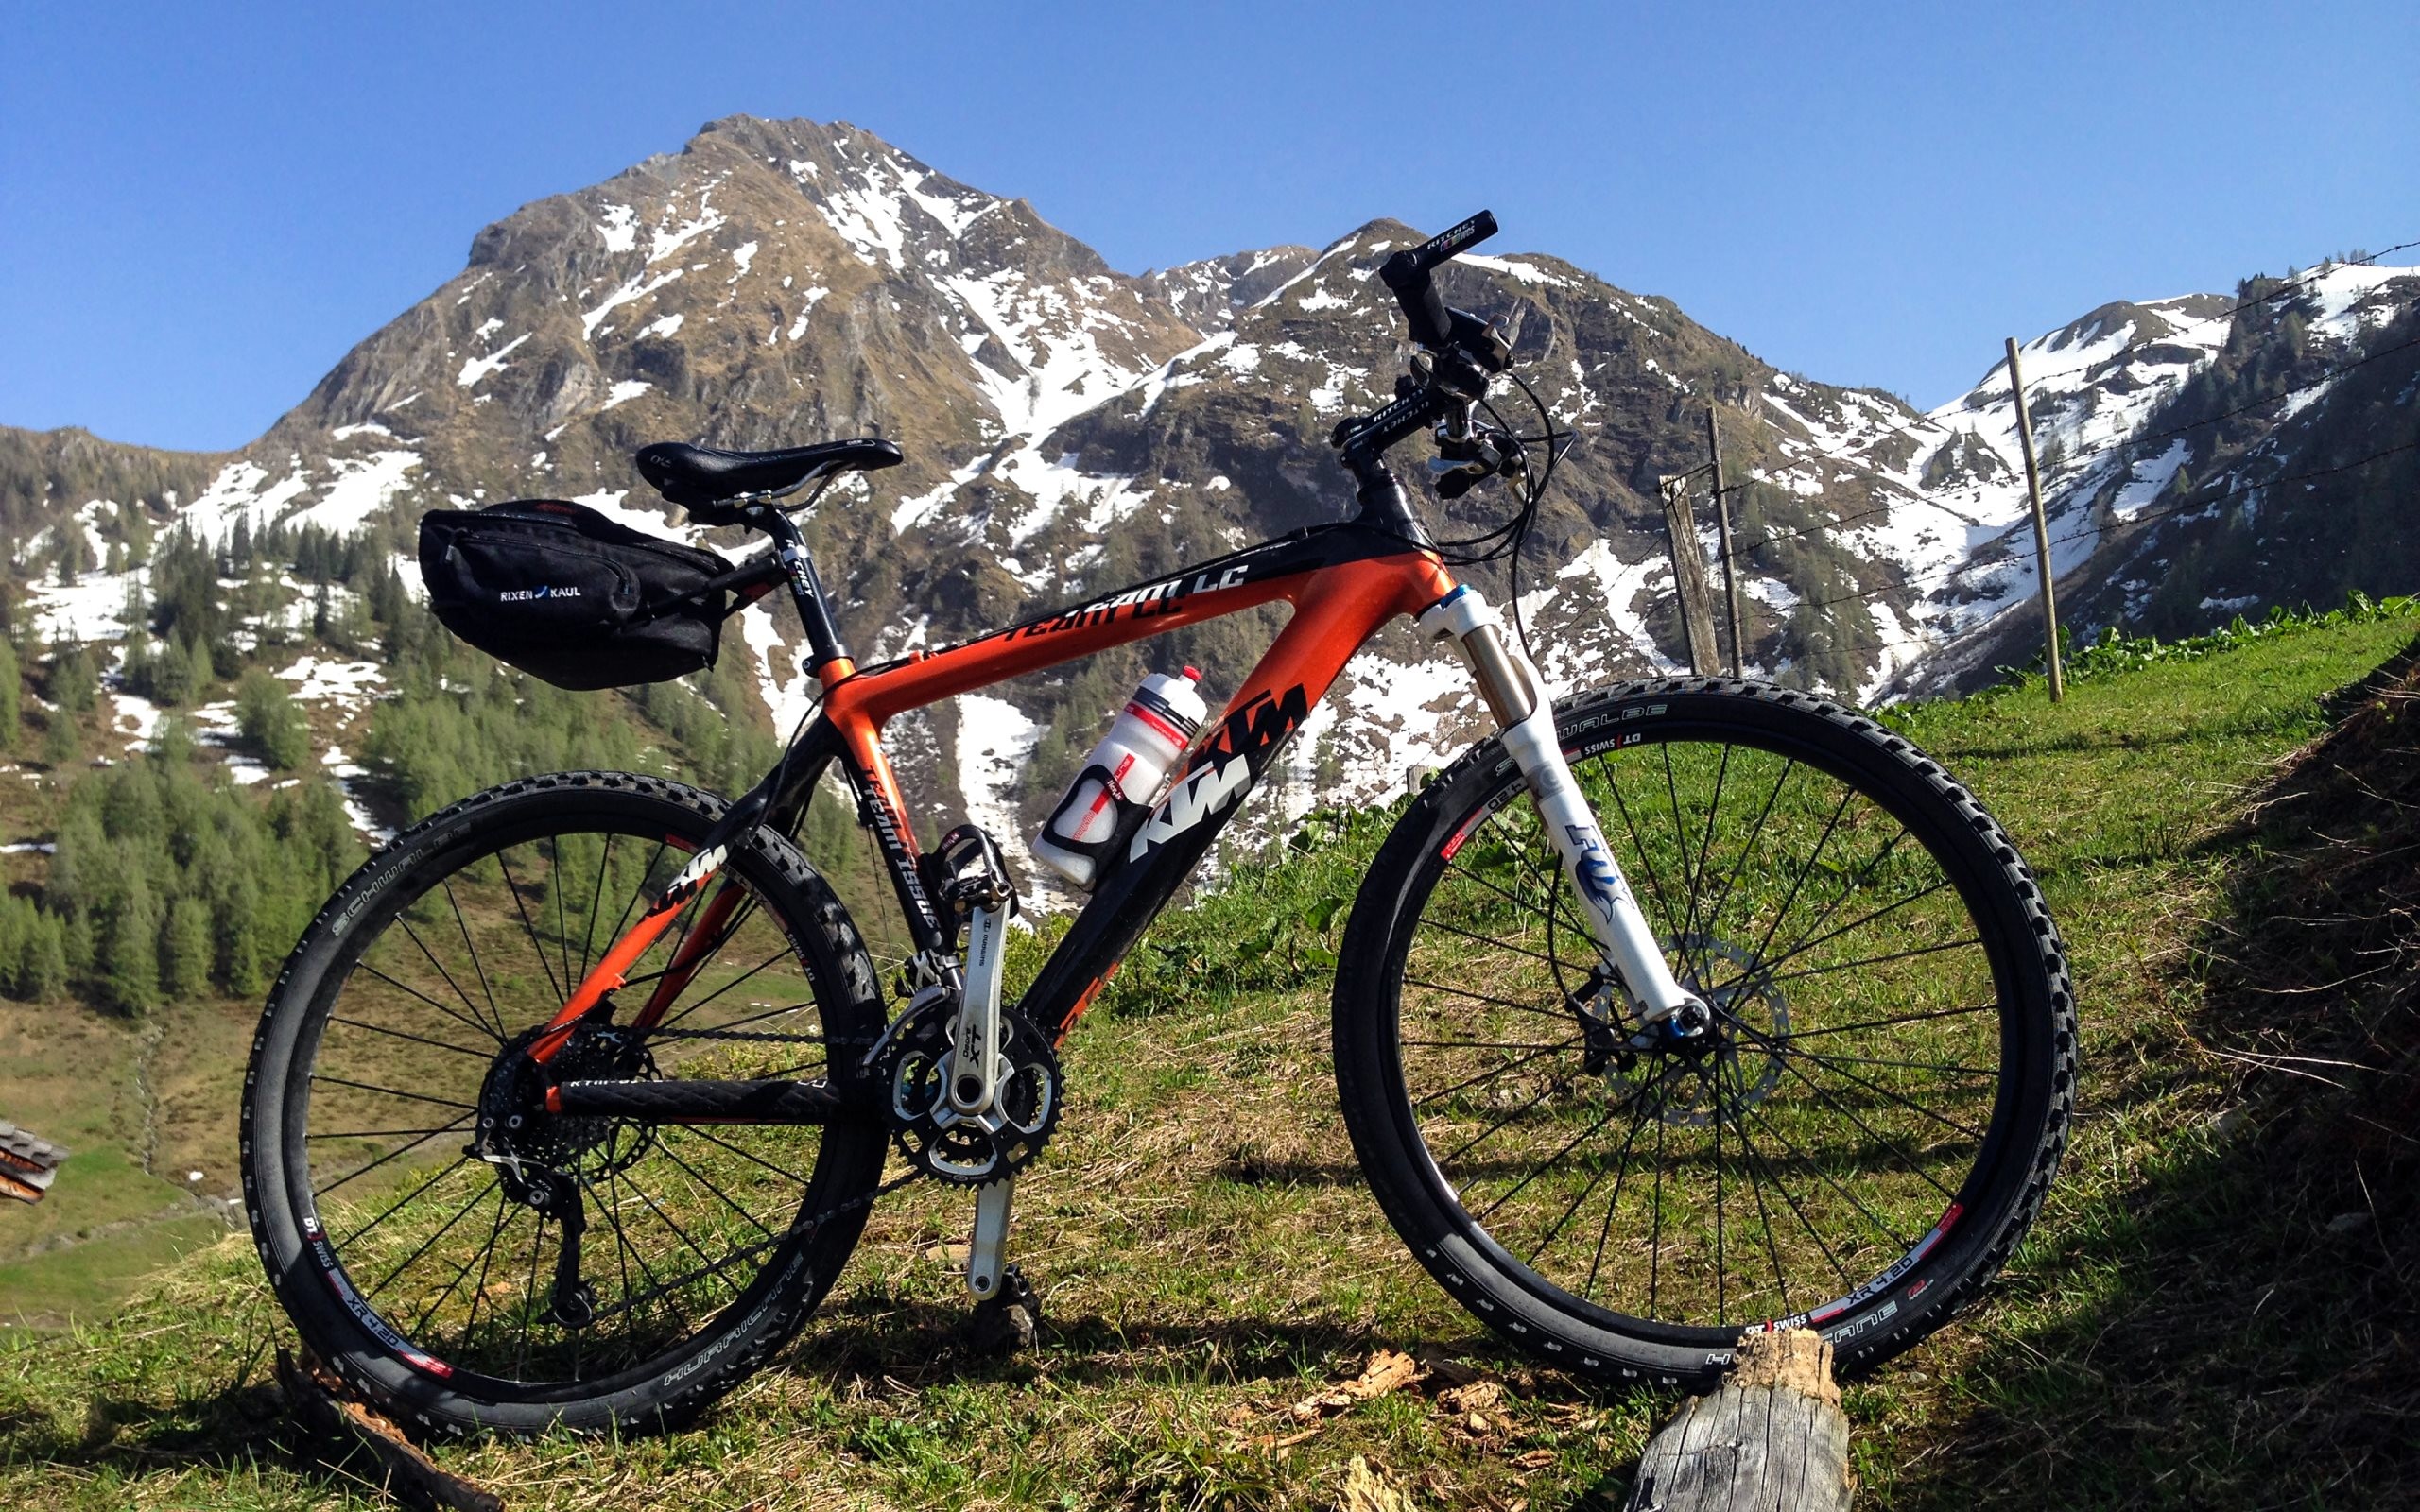 2560x1600 4K HD Wallpaper: KTM Professional Mountain Bike